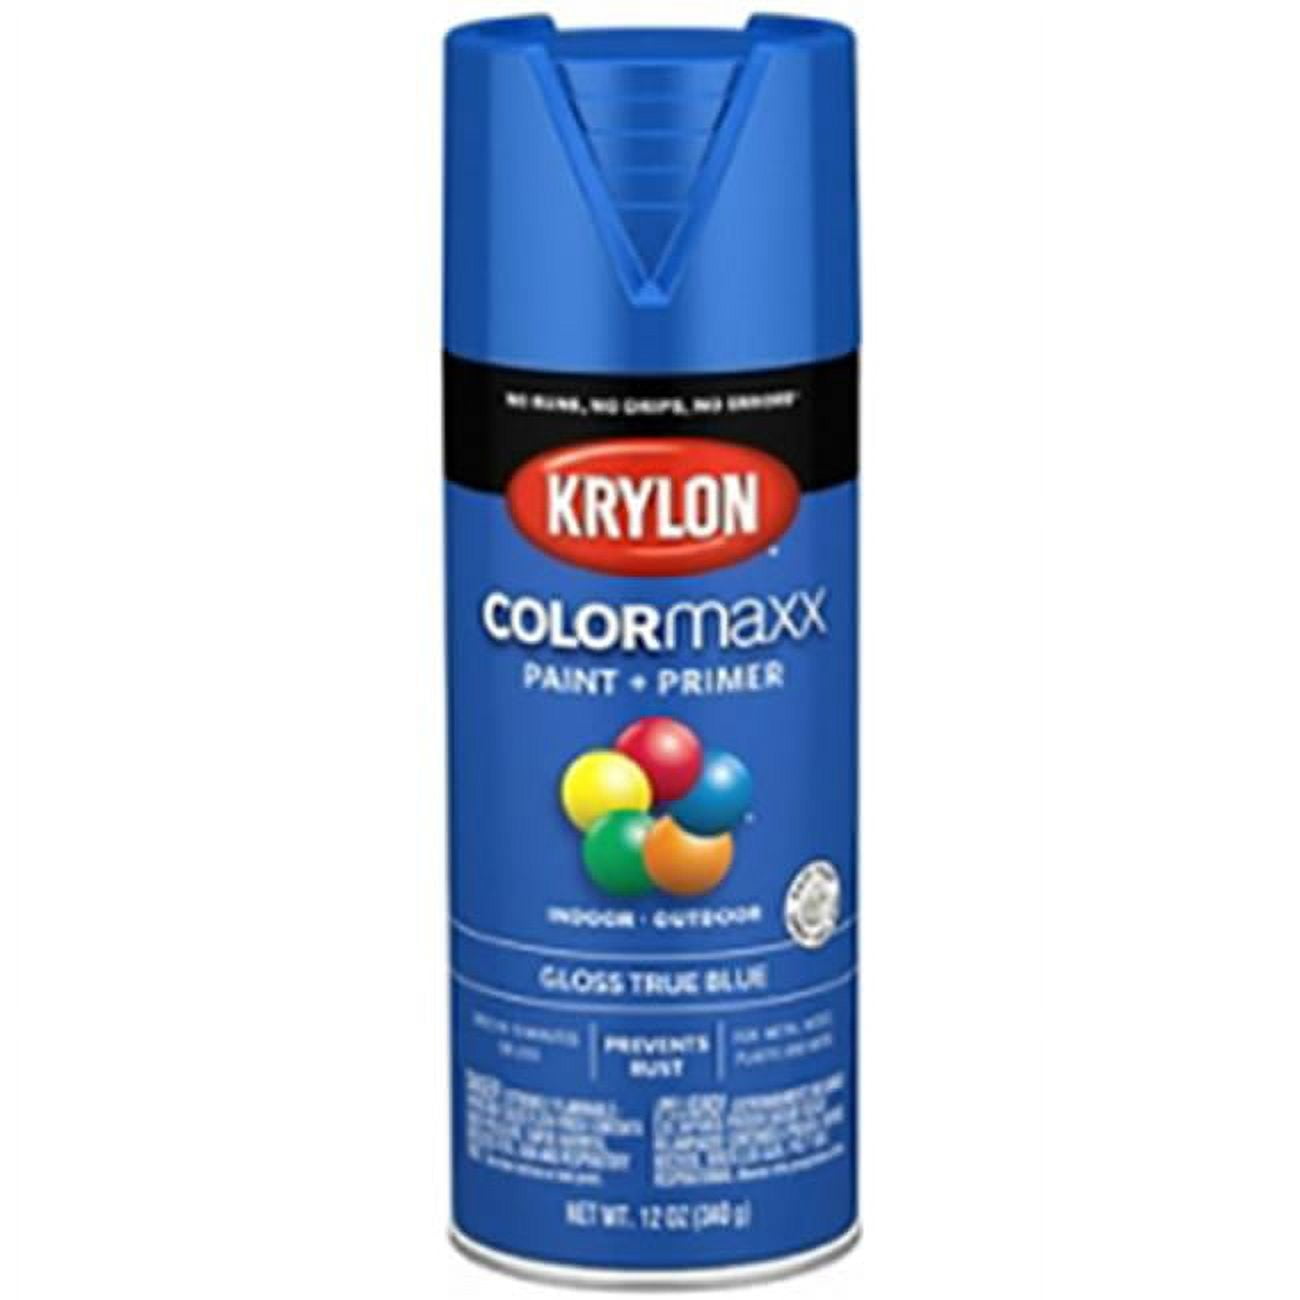 K05594007 12 Oz Colormaxx Paint Primer Spray, Matte Eggplant